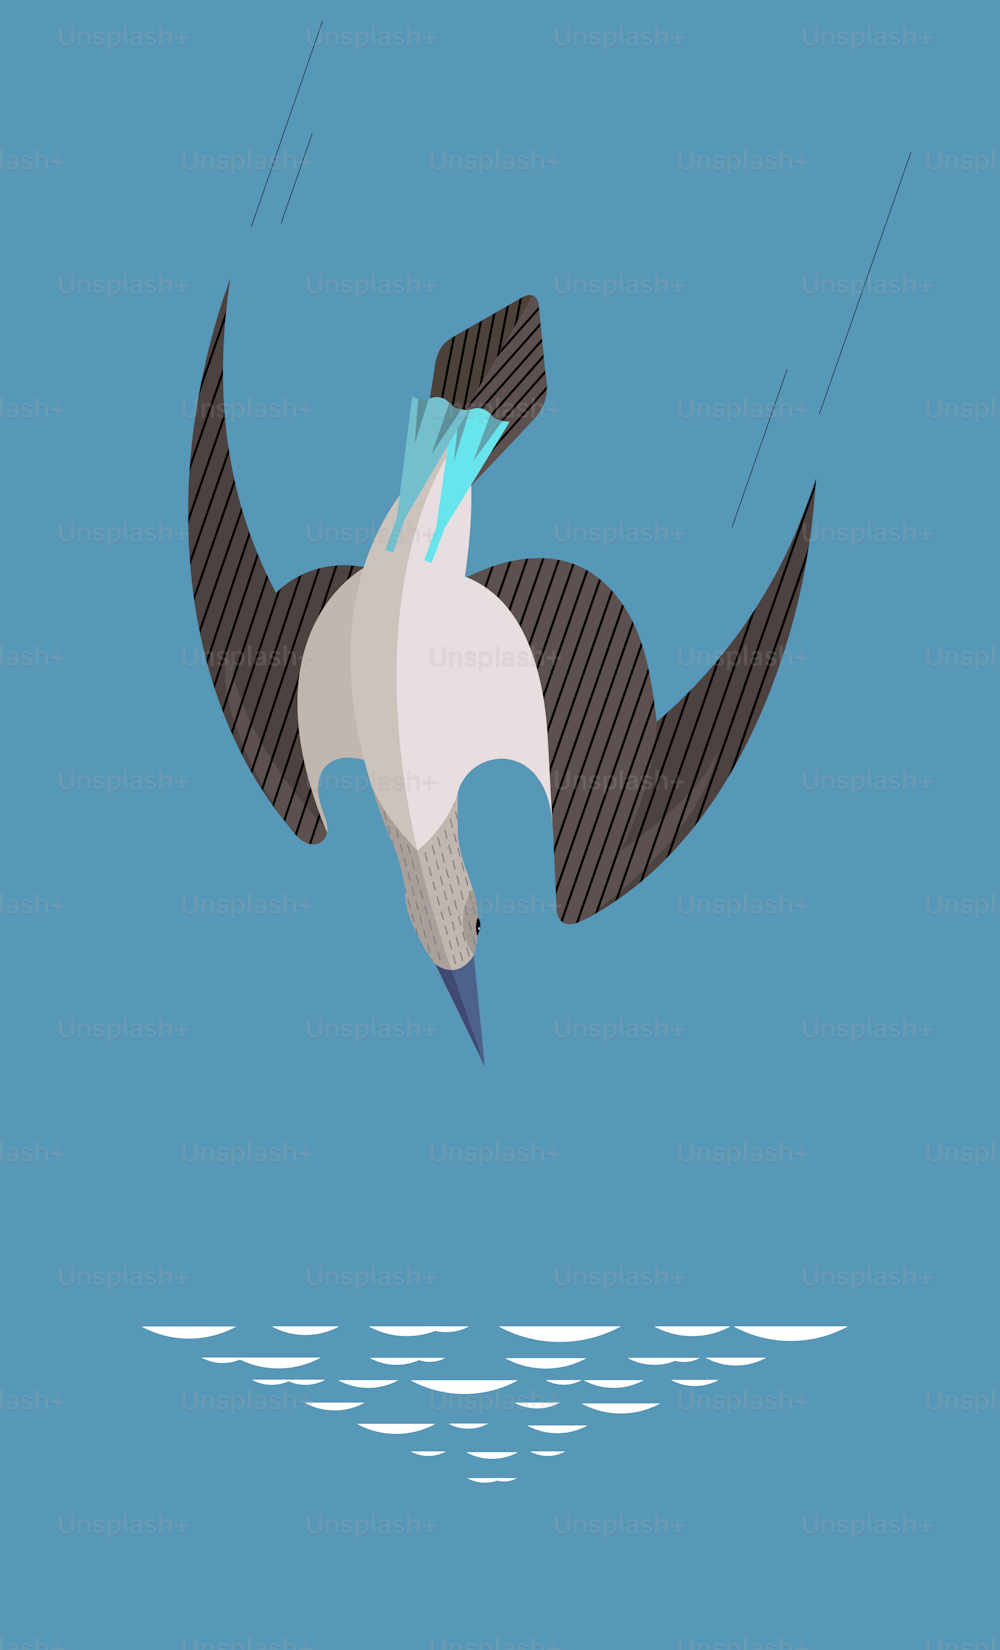 Blaufußtölpel sind an Land lustig und tollpatschig. Aber in der Luft ist dieser Vogel ein flinker Jäger, der seine Beute blitzschnell angreift. Stilisiertes Bild.